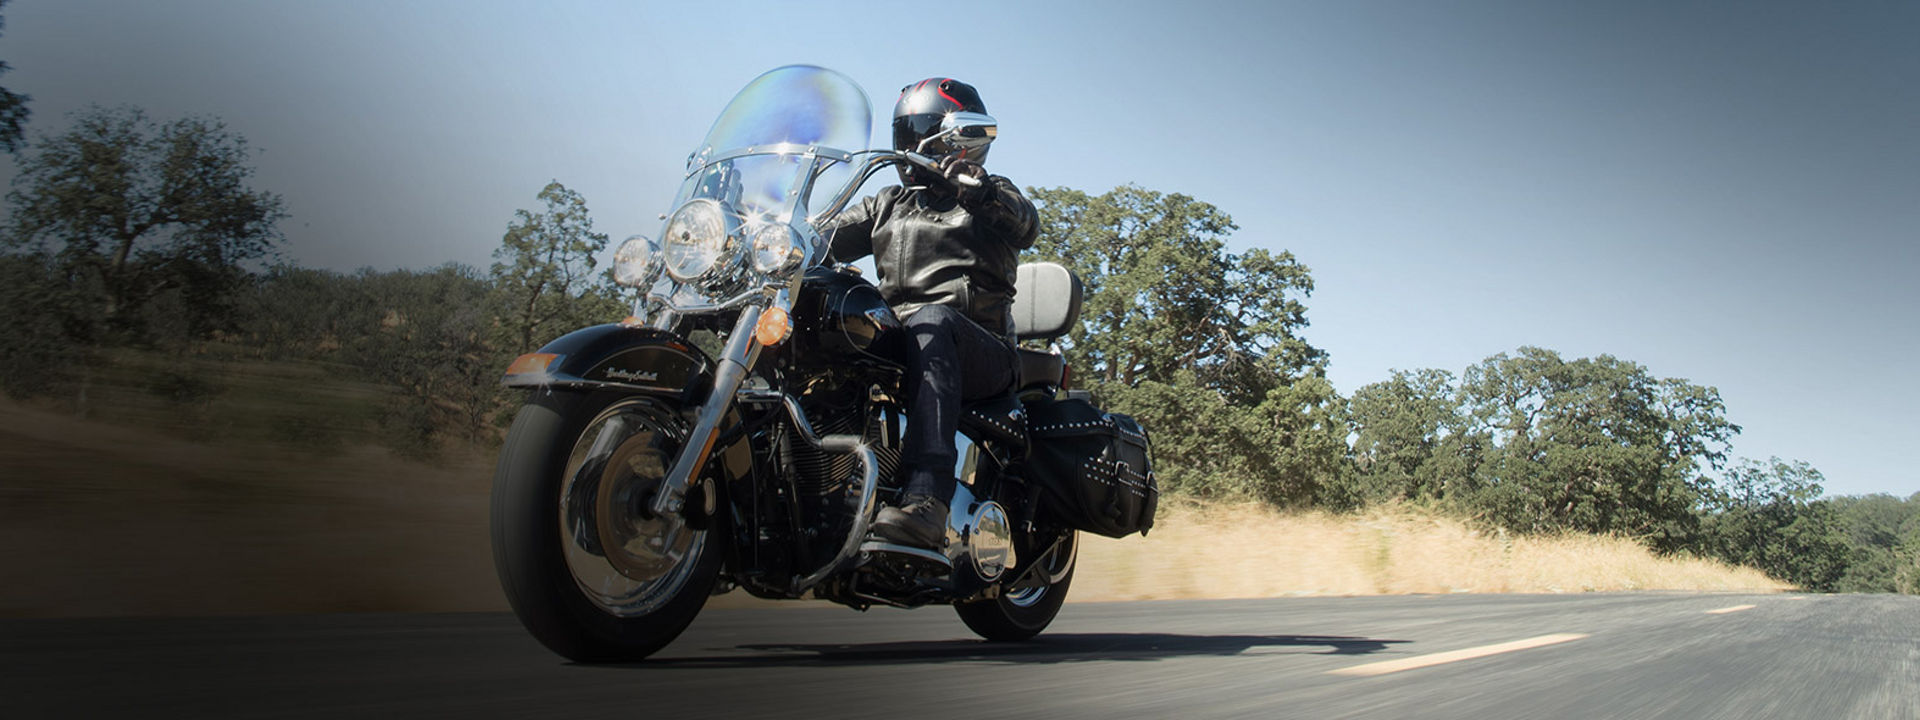 Dette bildet viser en motorsyklist som kjører med custom Bridgestone motorsykkeldekk.